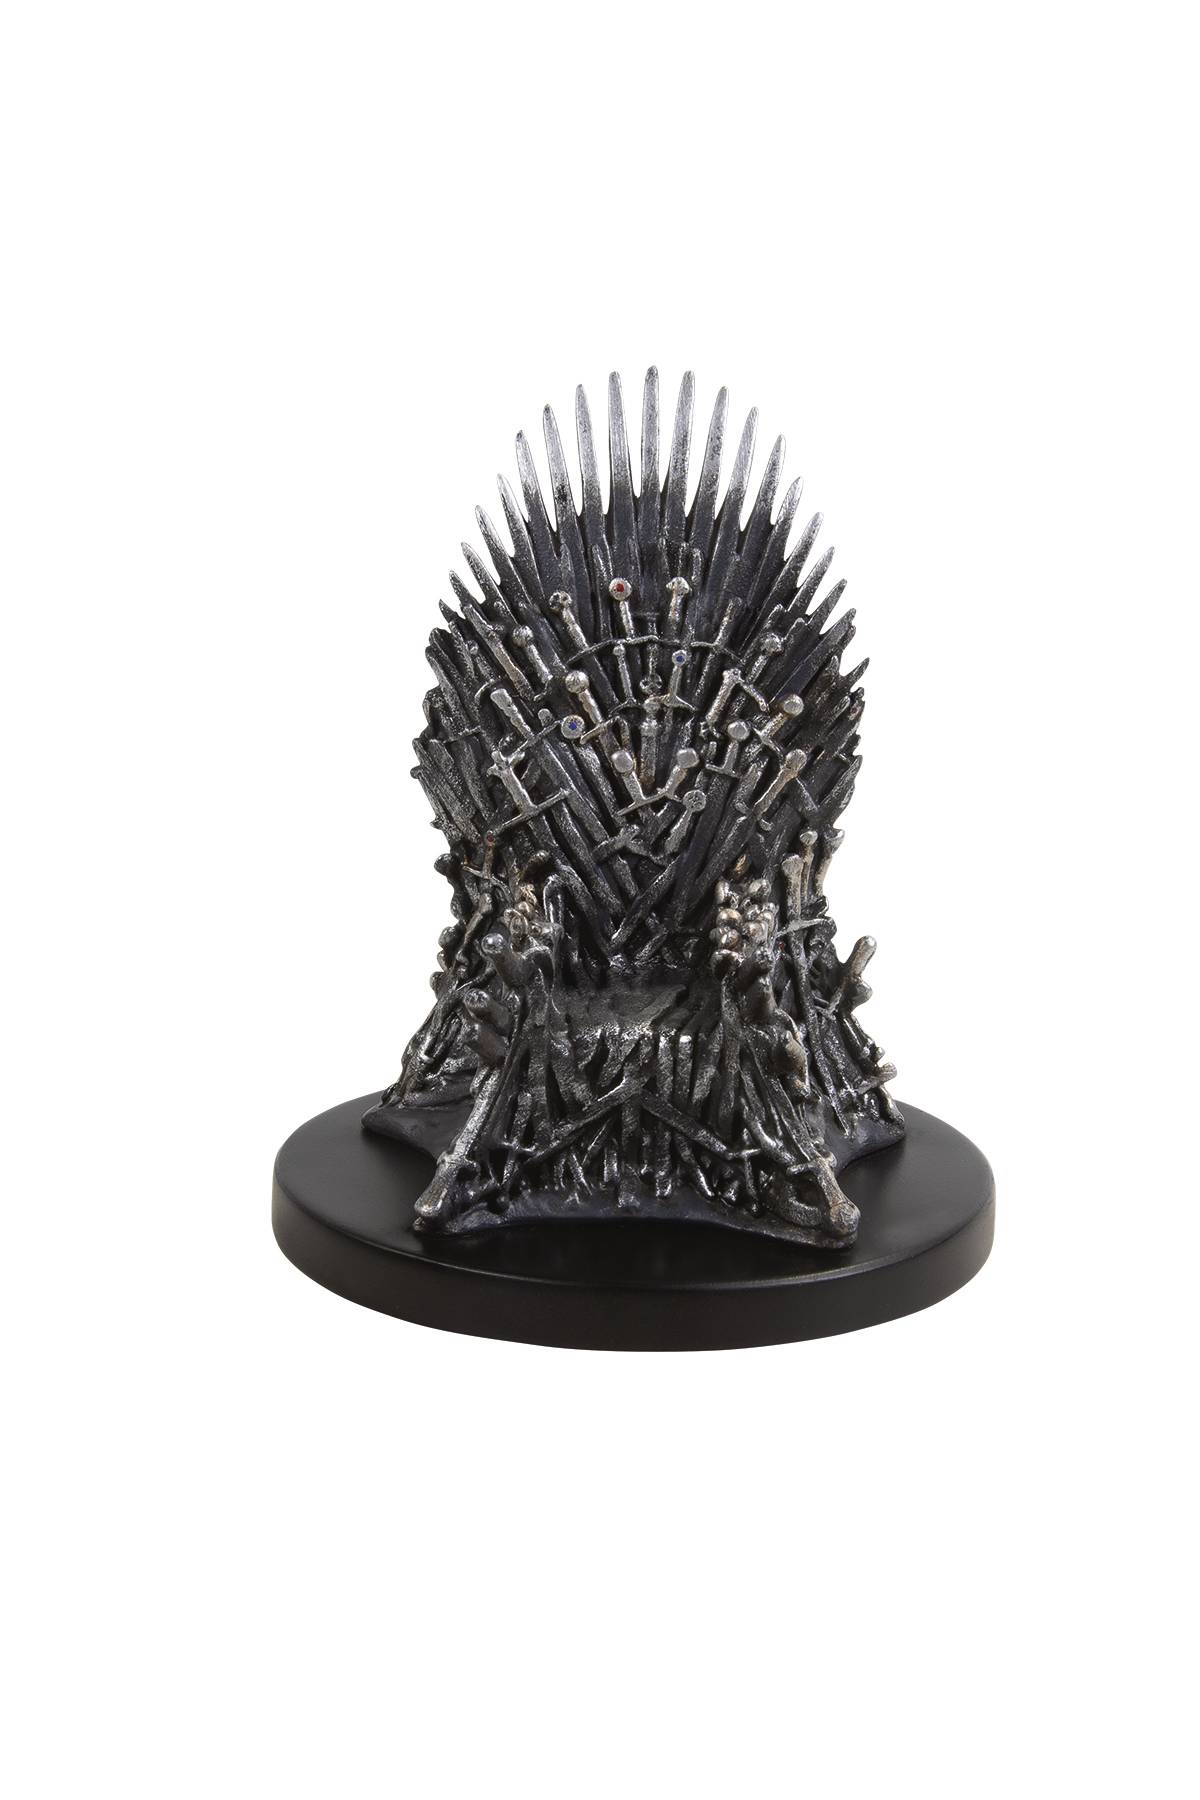 Game of Thrones 4" Iron Throne Mini Replica 2019 Licensed Dark Horse Deluxe NIB 